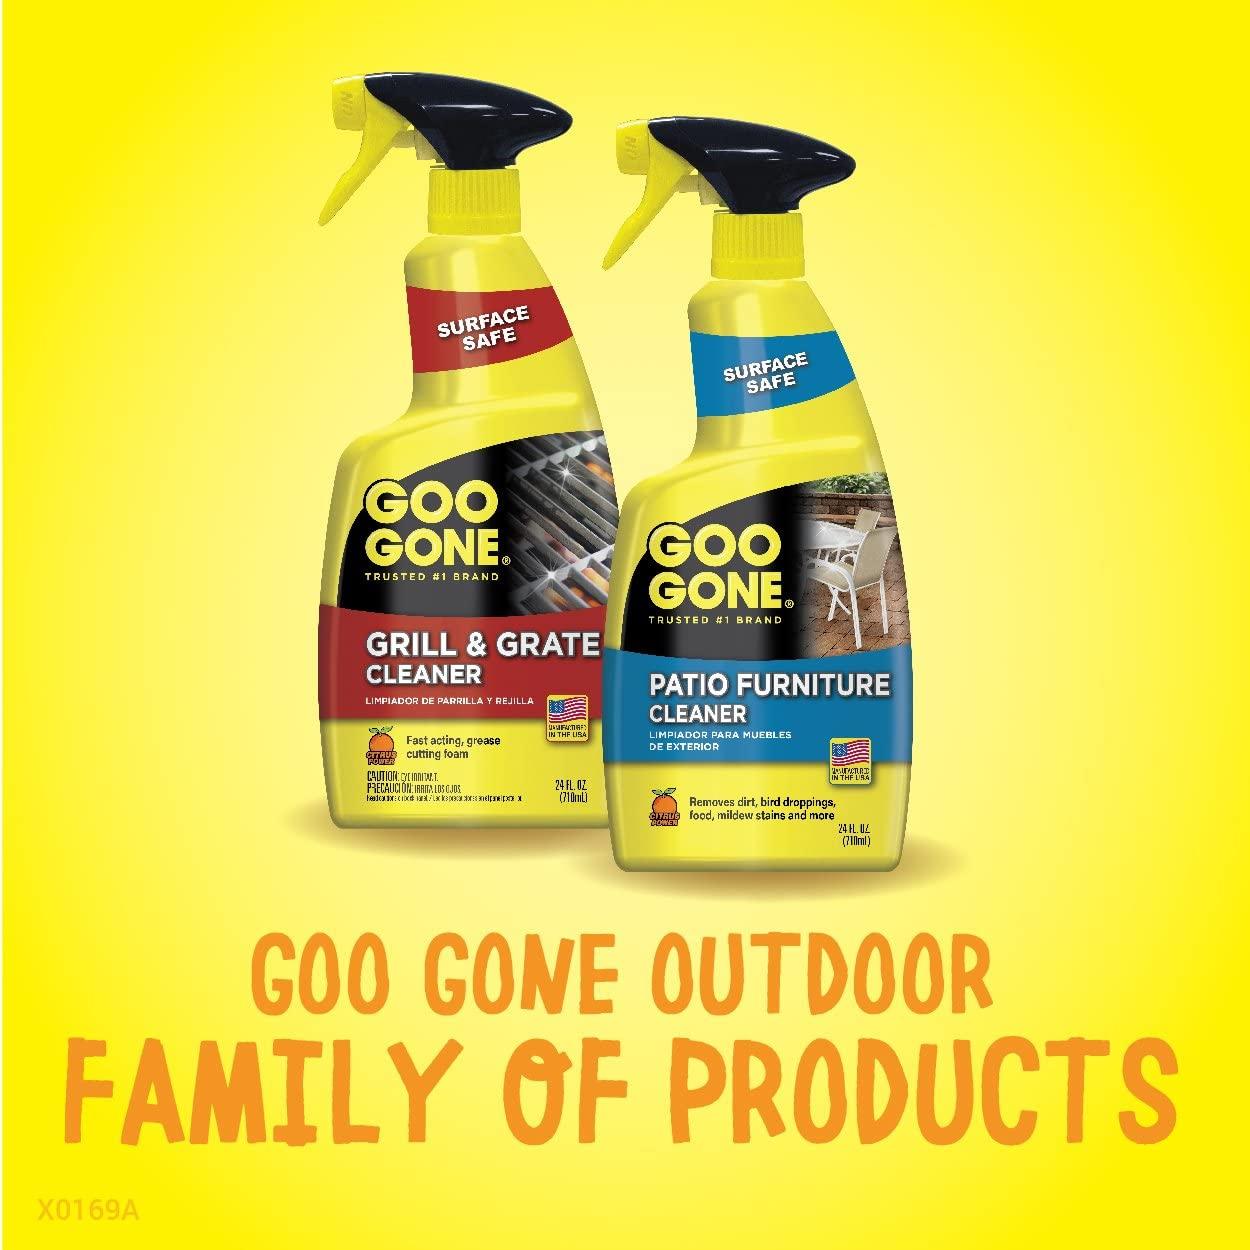 Goo Gone Pro-Power Cleaner Citrus Scent 24 oz Spray Bottle